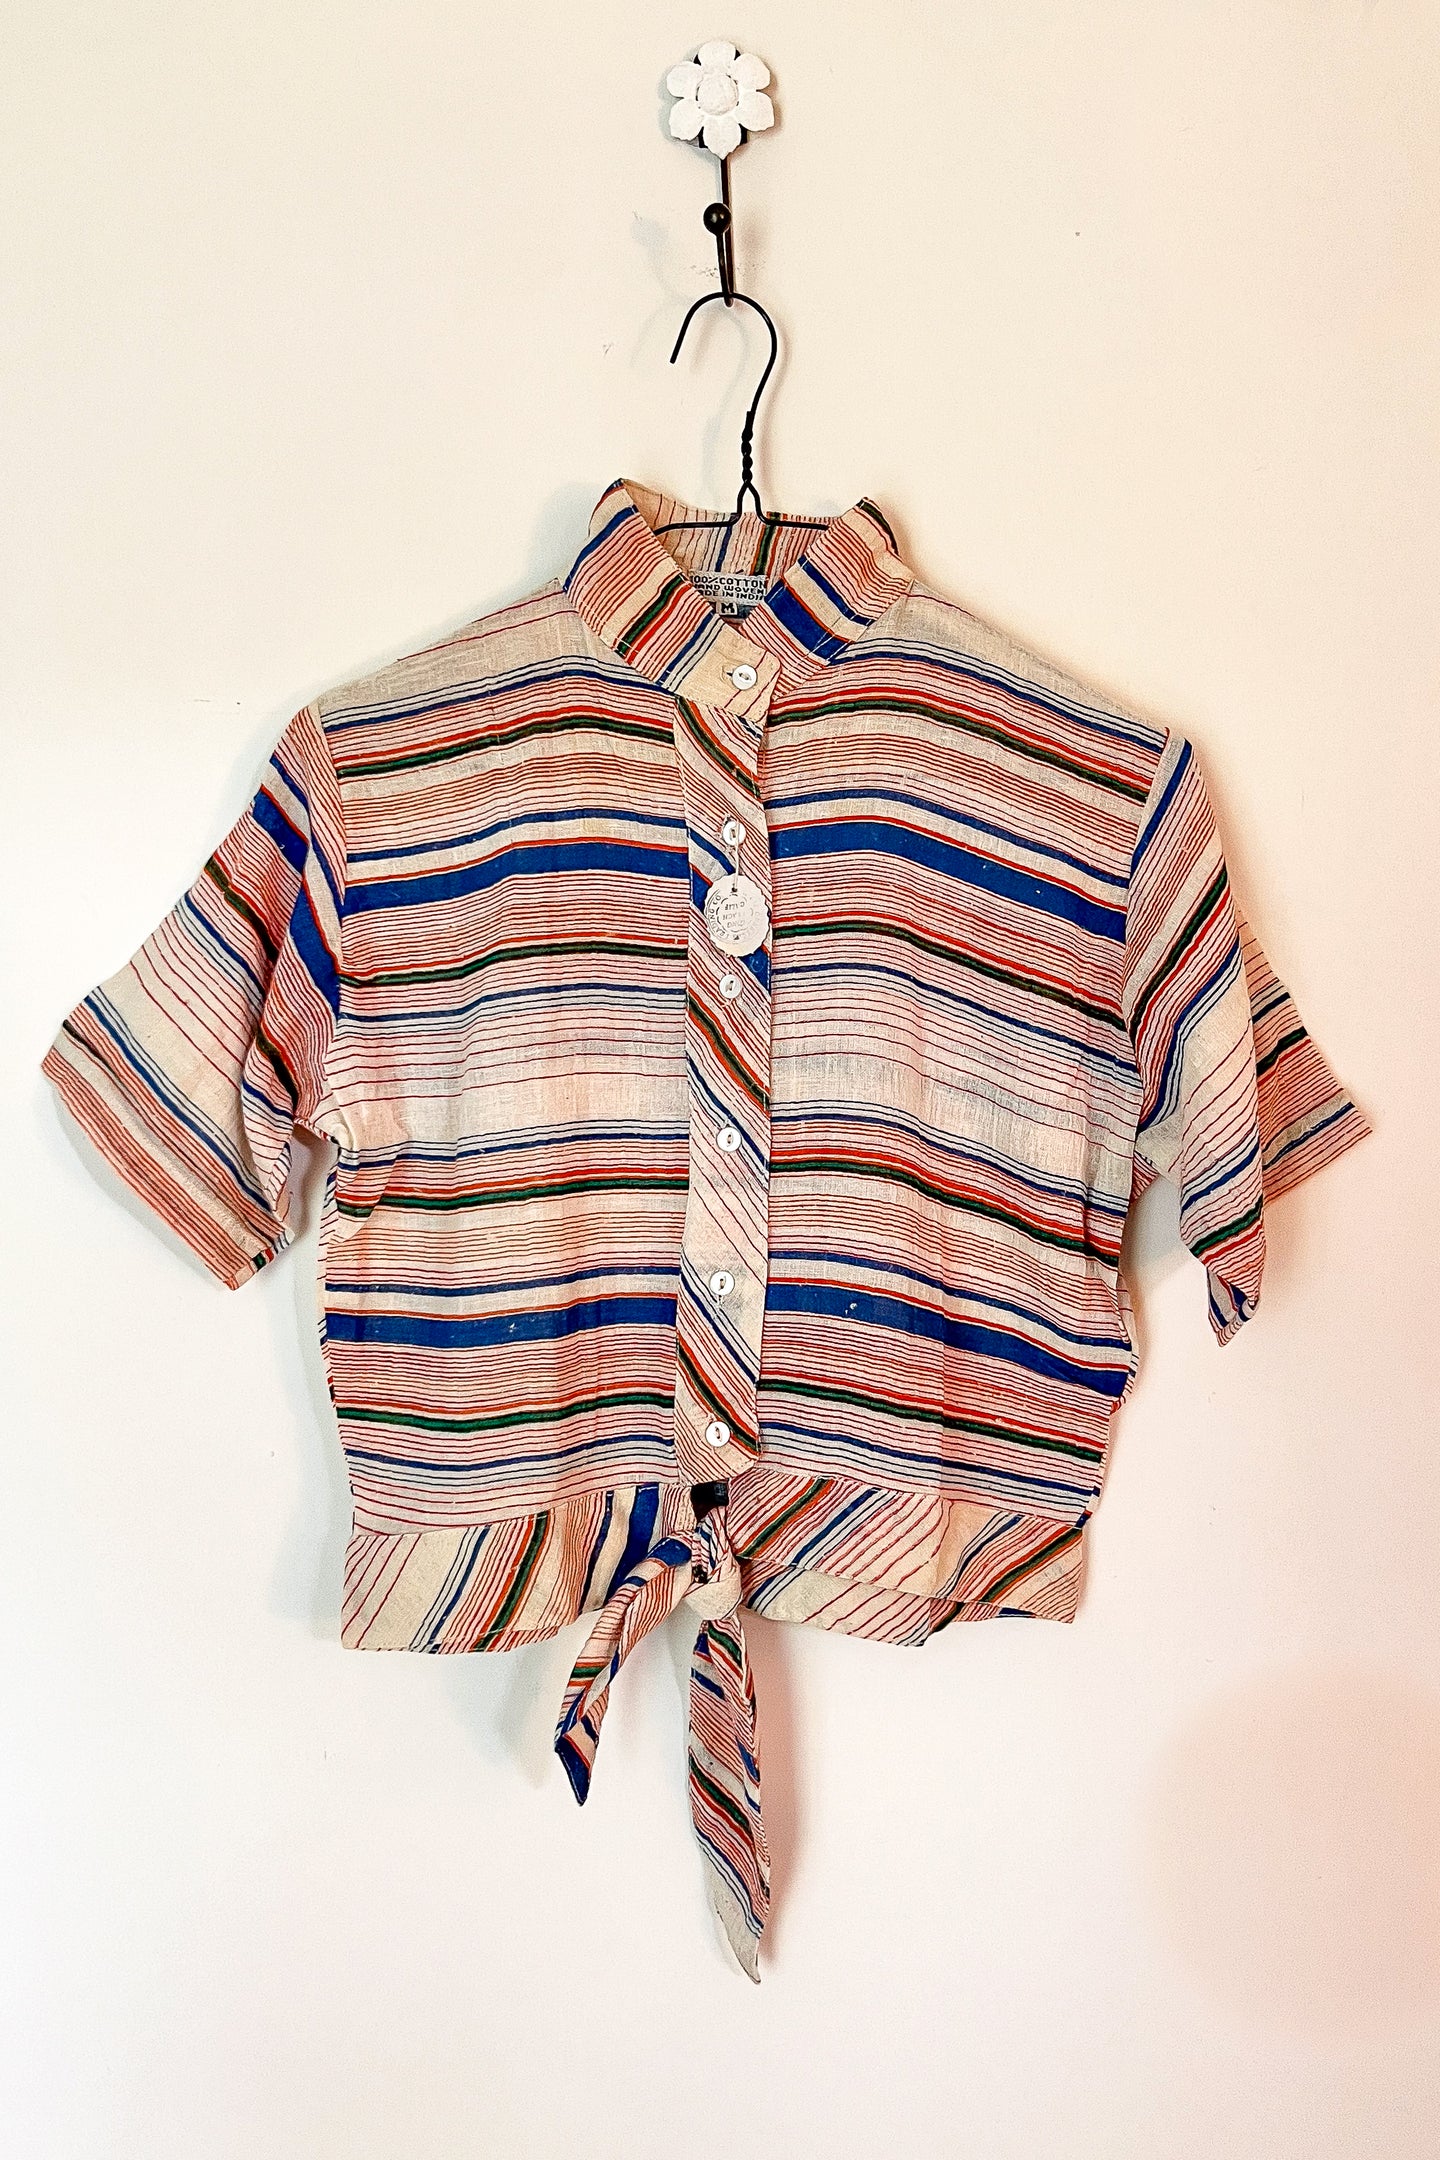 Vintage Indian Cotton Orange Stripe Shirt / Medium